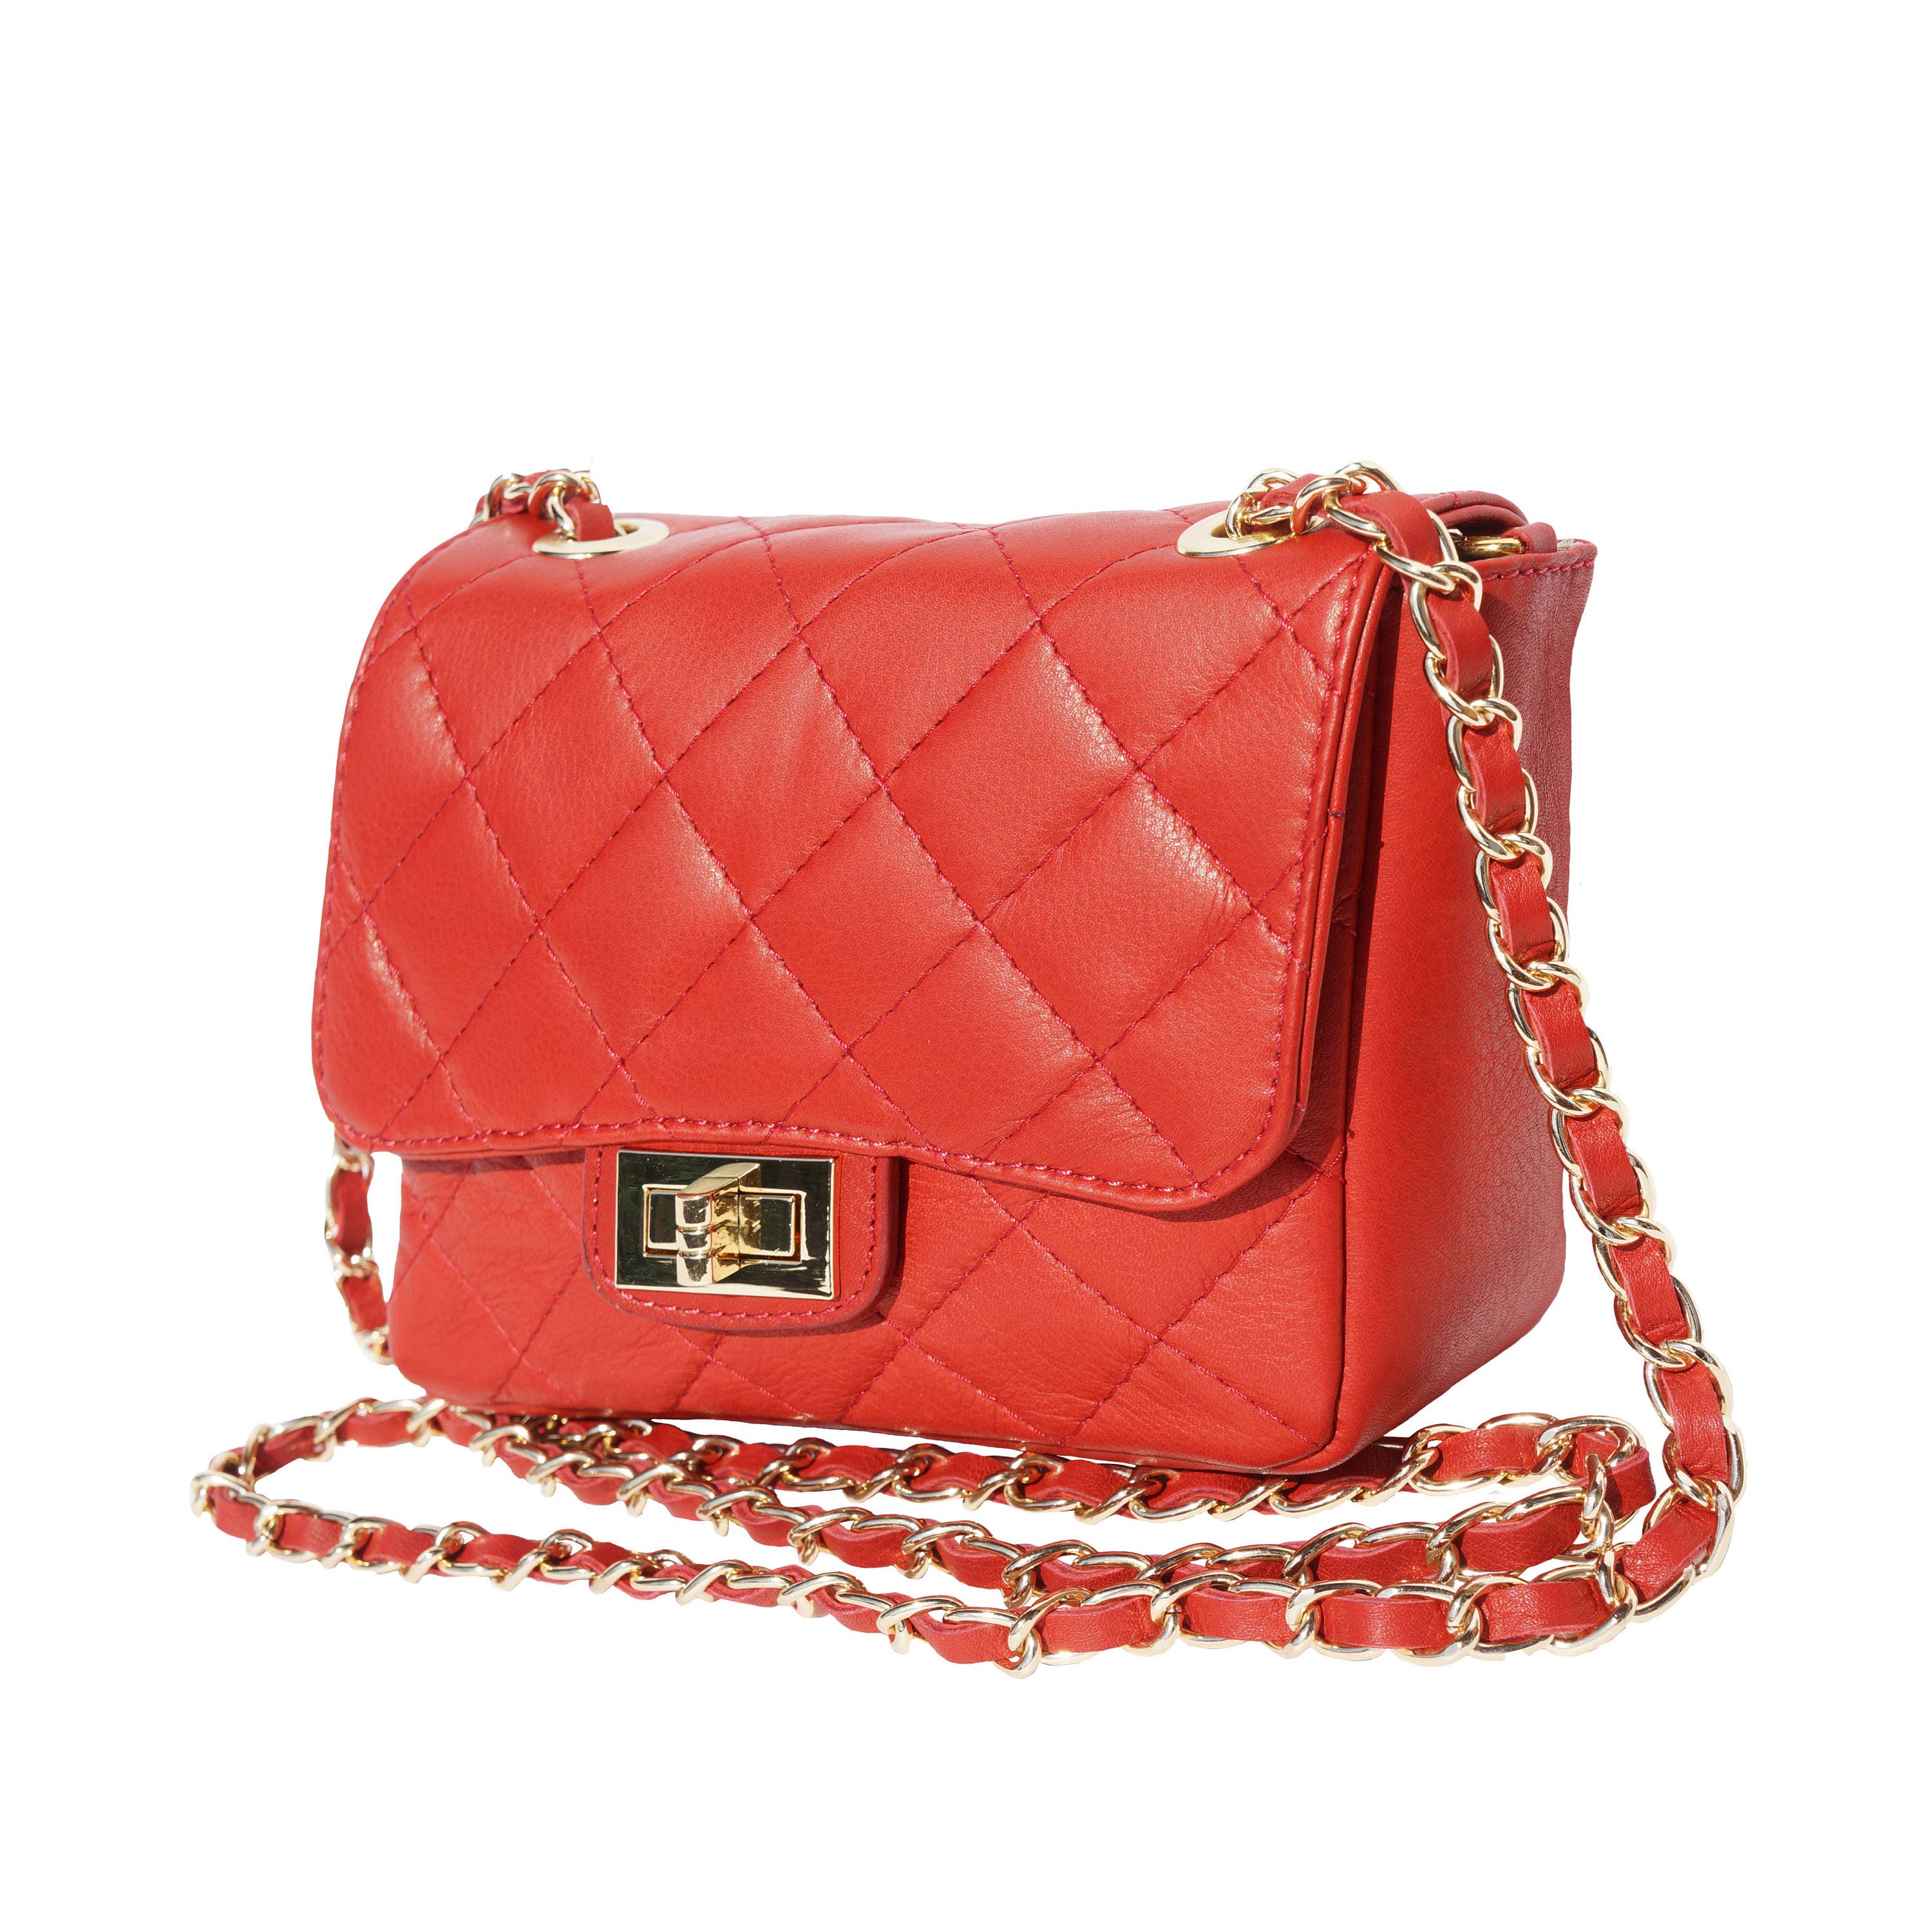 Spring 2018: Red Leather Handbag Red Shoulder bag Quilted